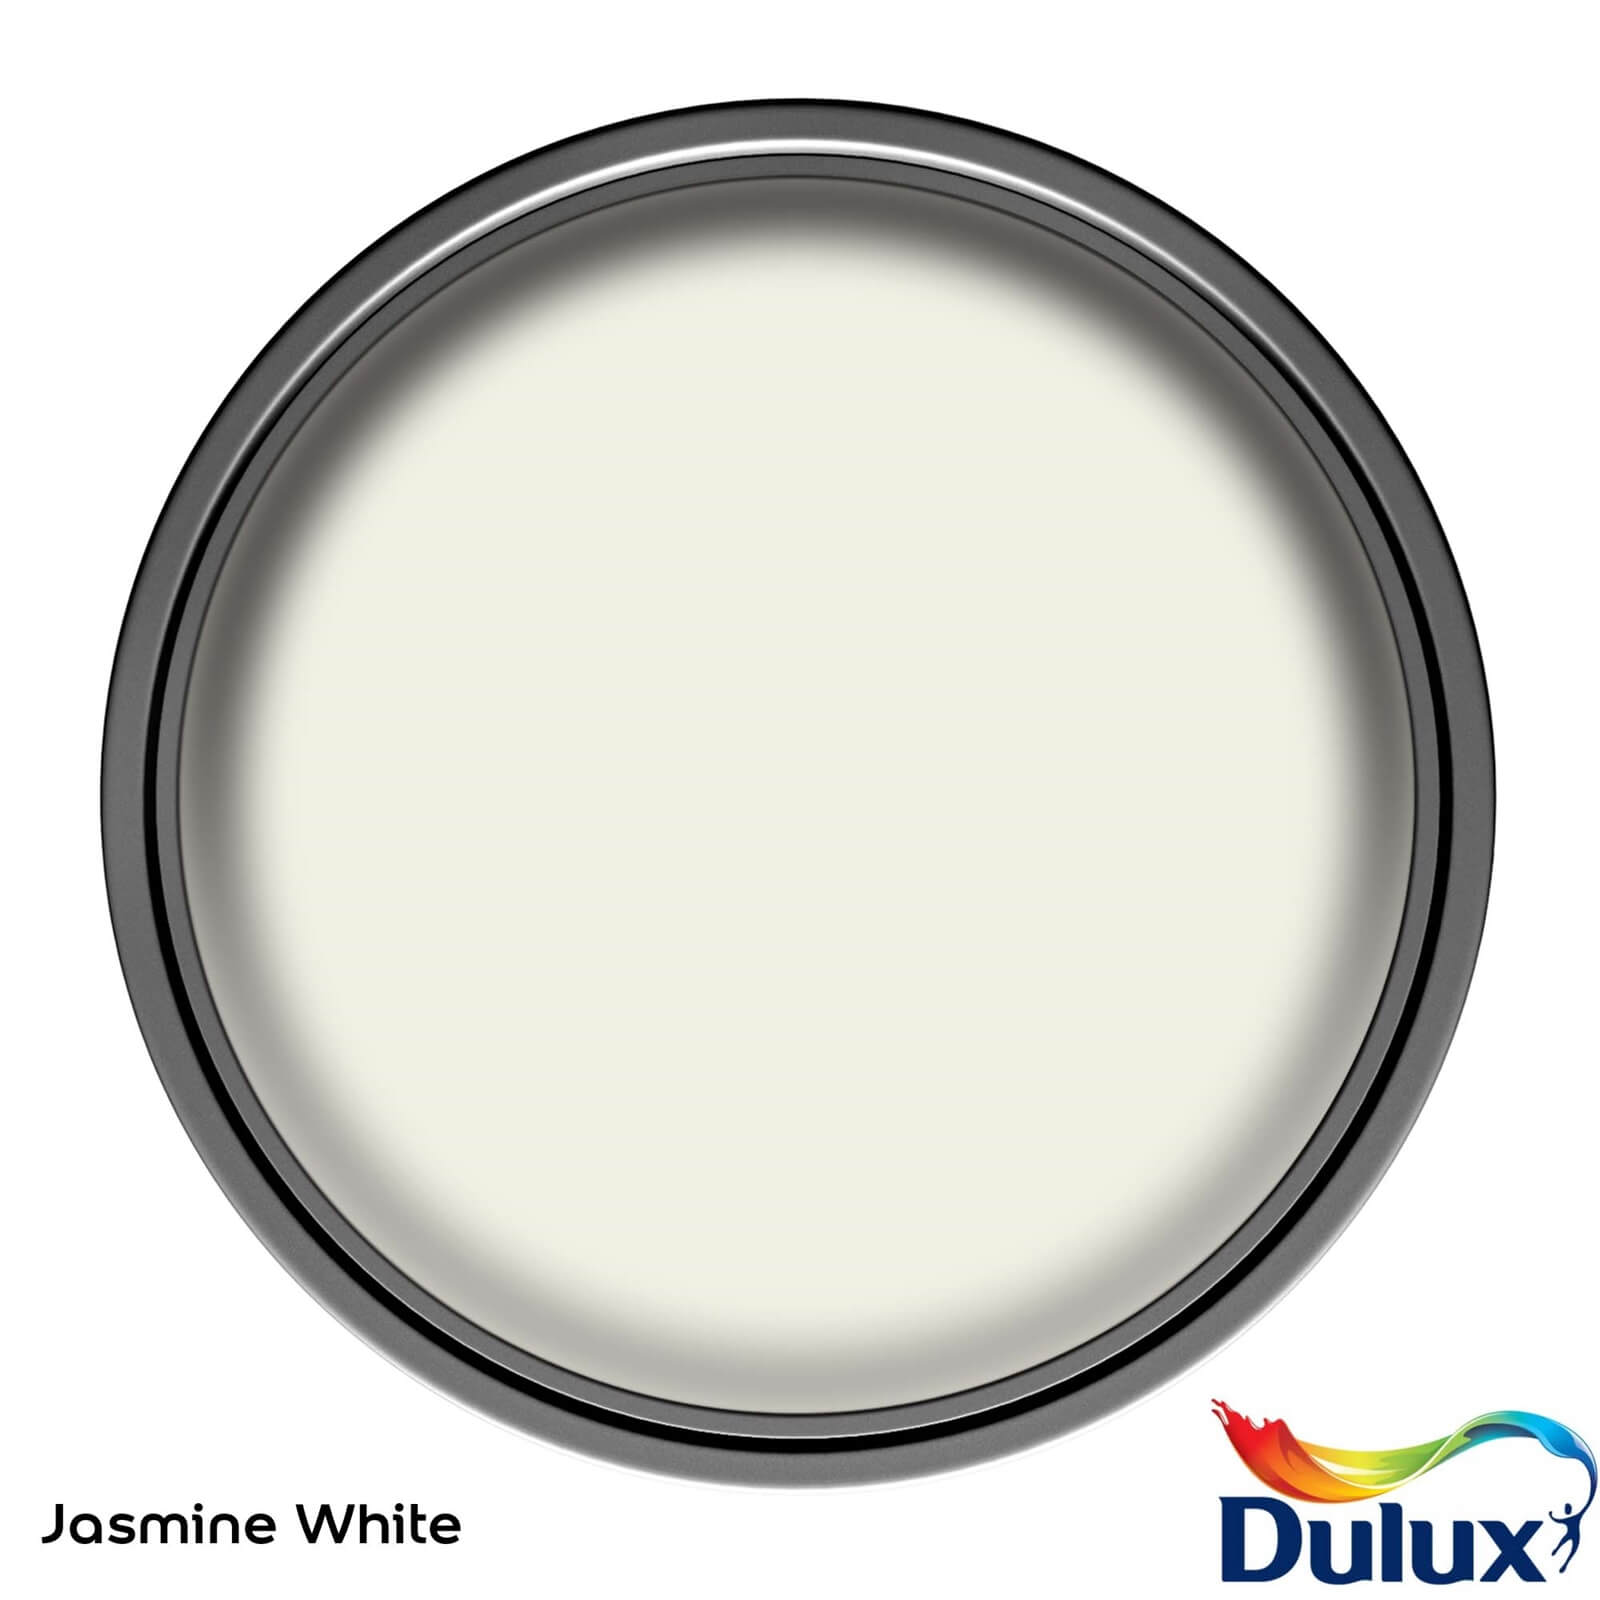 Dulux Easycare Washable & Tough Matt Paint Jasmine White - 5L